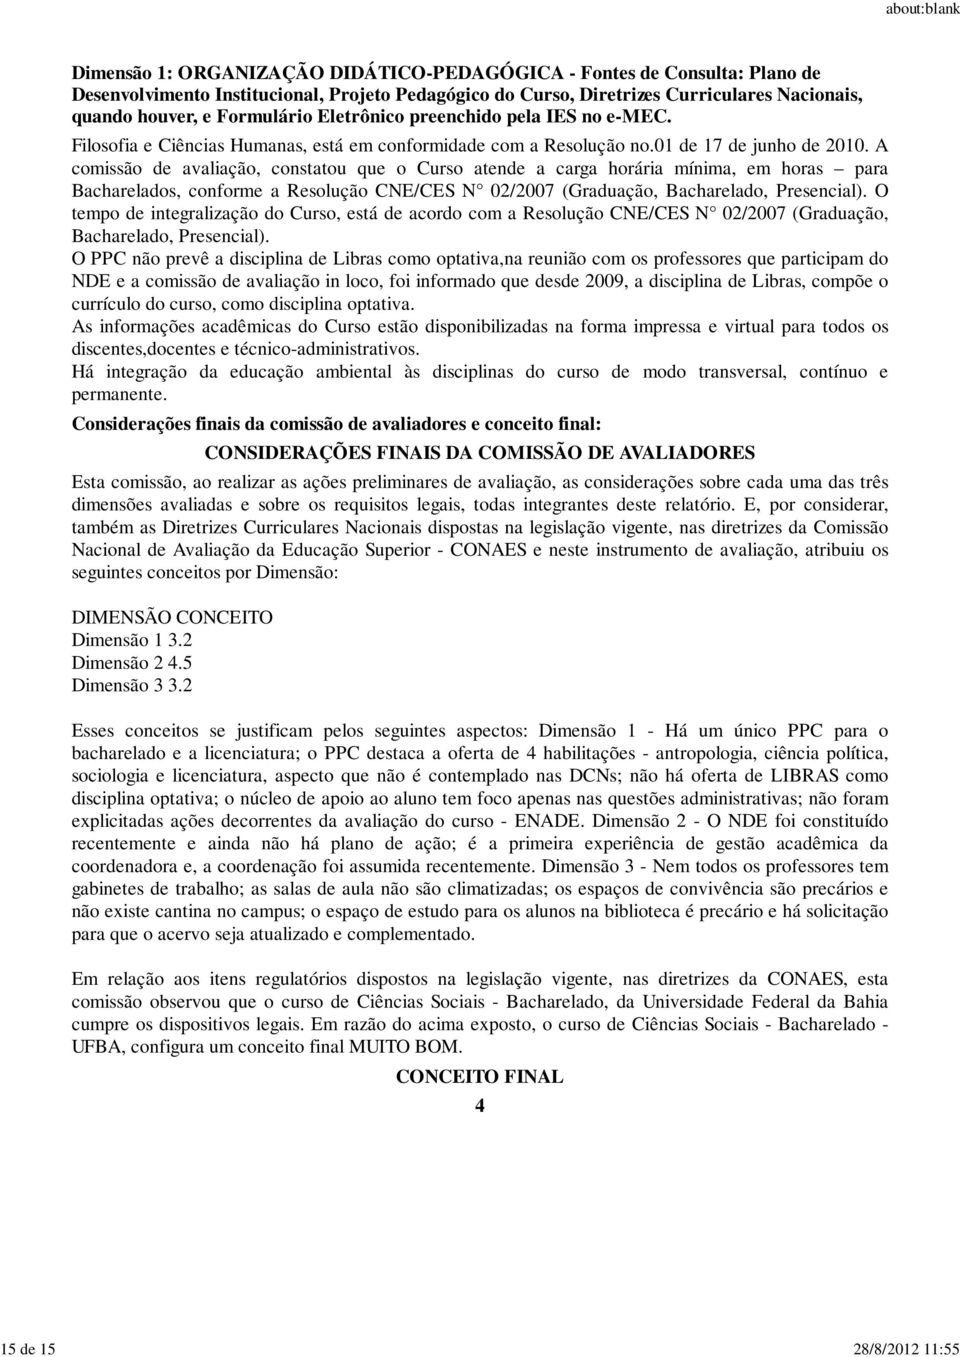 O tempo de integralização do Curso, está de acordo com a Resolução CNE/CES N 02/2007 (Graduação, Bacharelado, Presencial).